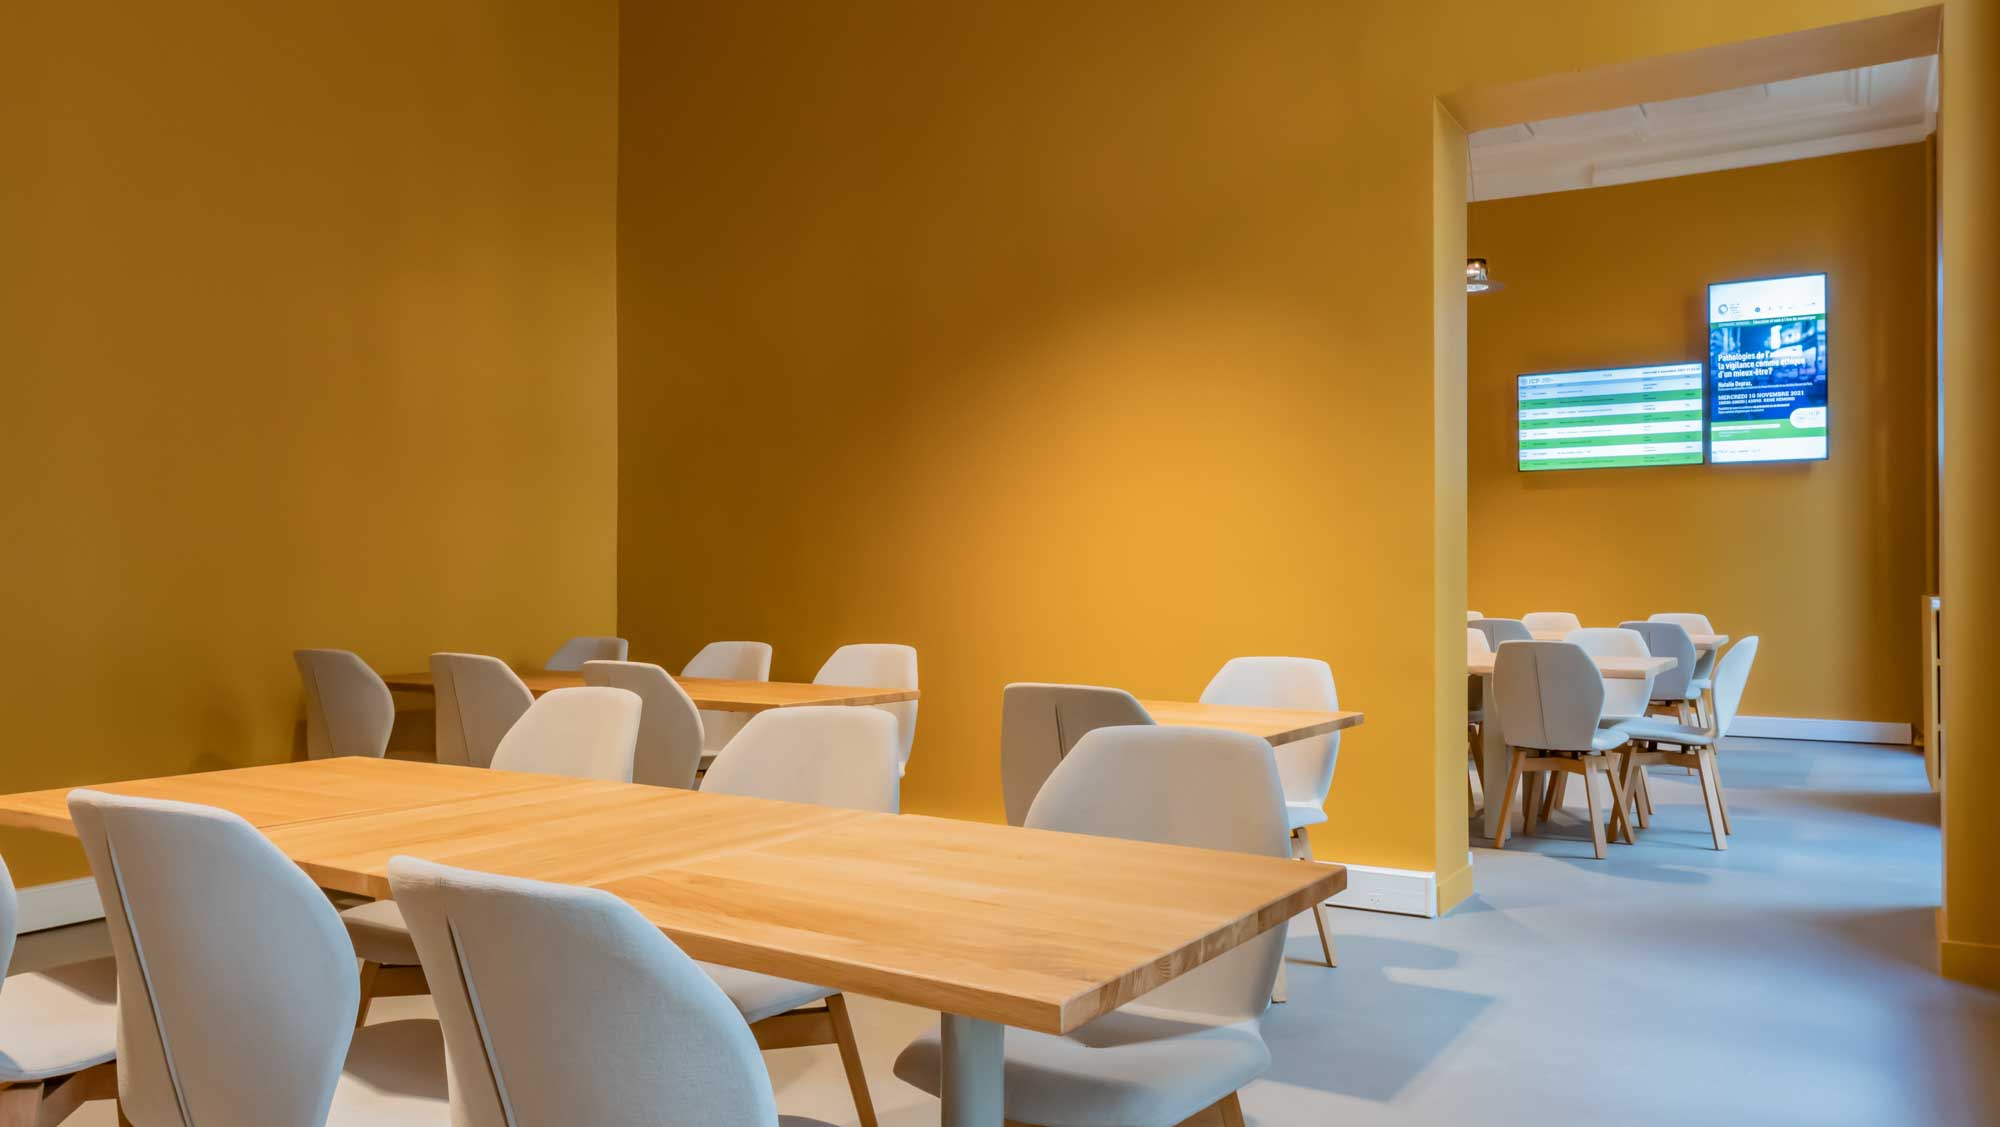 Salle collaborative de l'ICP, des tables conviviales dans un espace de travail convivial et coloré.